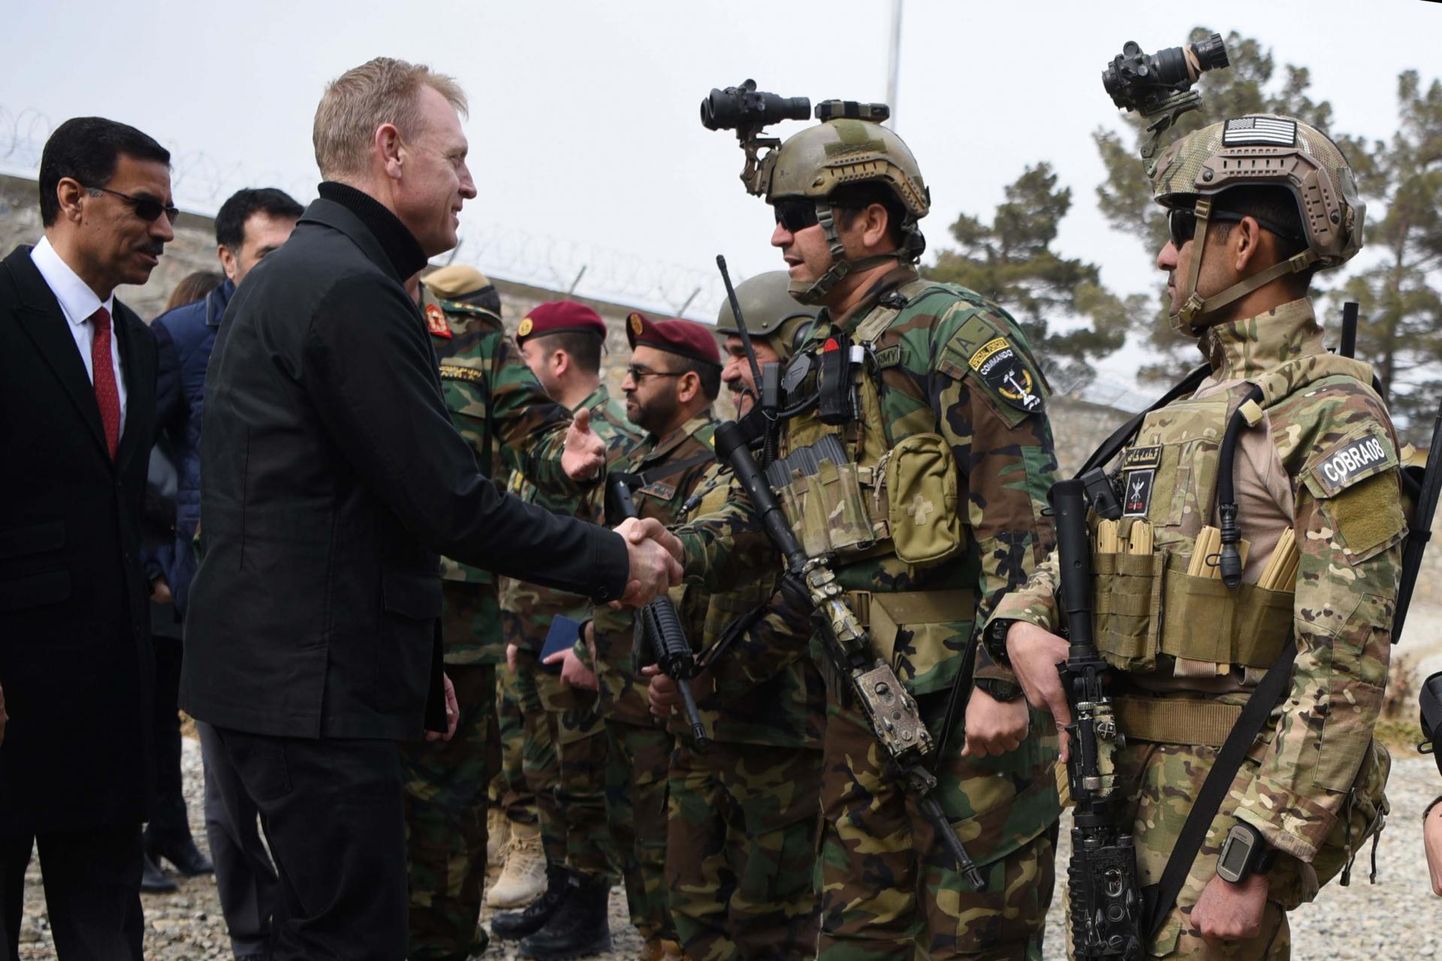 Enne NATOsse kolleegidega kohtuma tulemist käis Ameerika Ühendriikide kaitseministri kohusetäitja Patrick Shanahan Afganistanis kohapealsete oludega tutvumas.